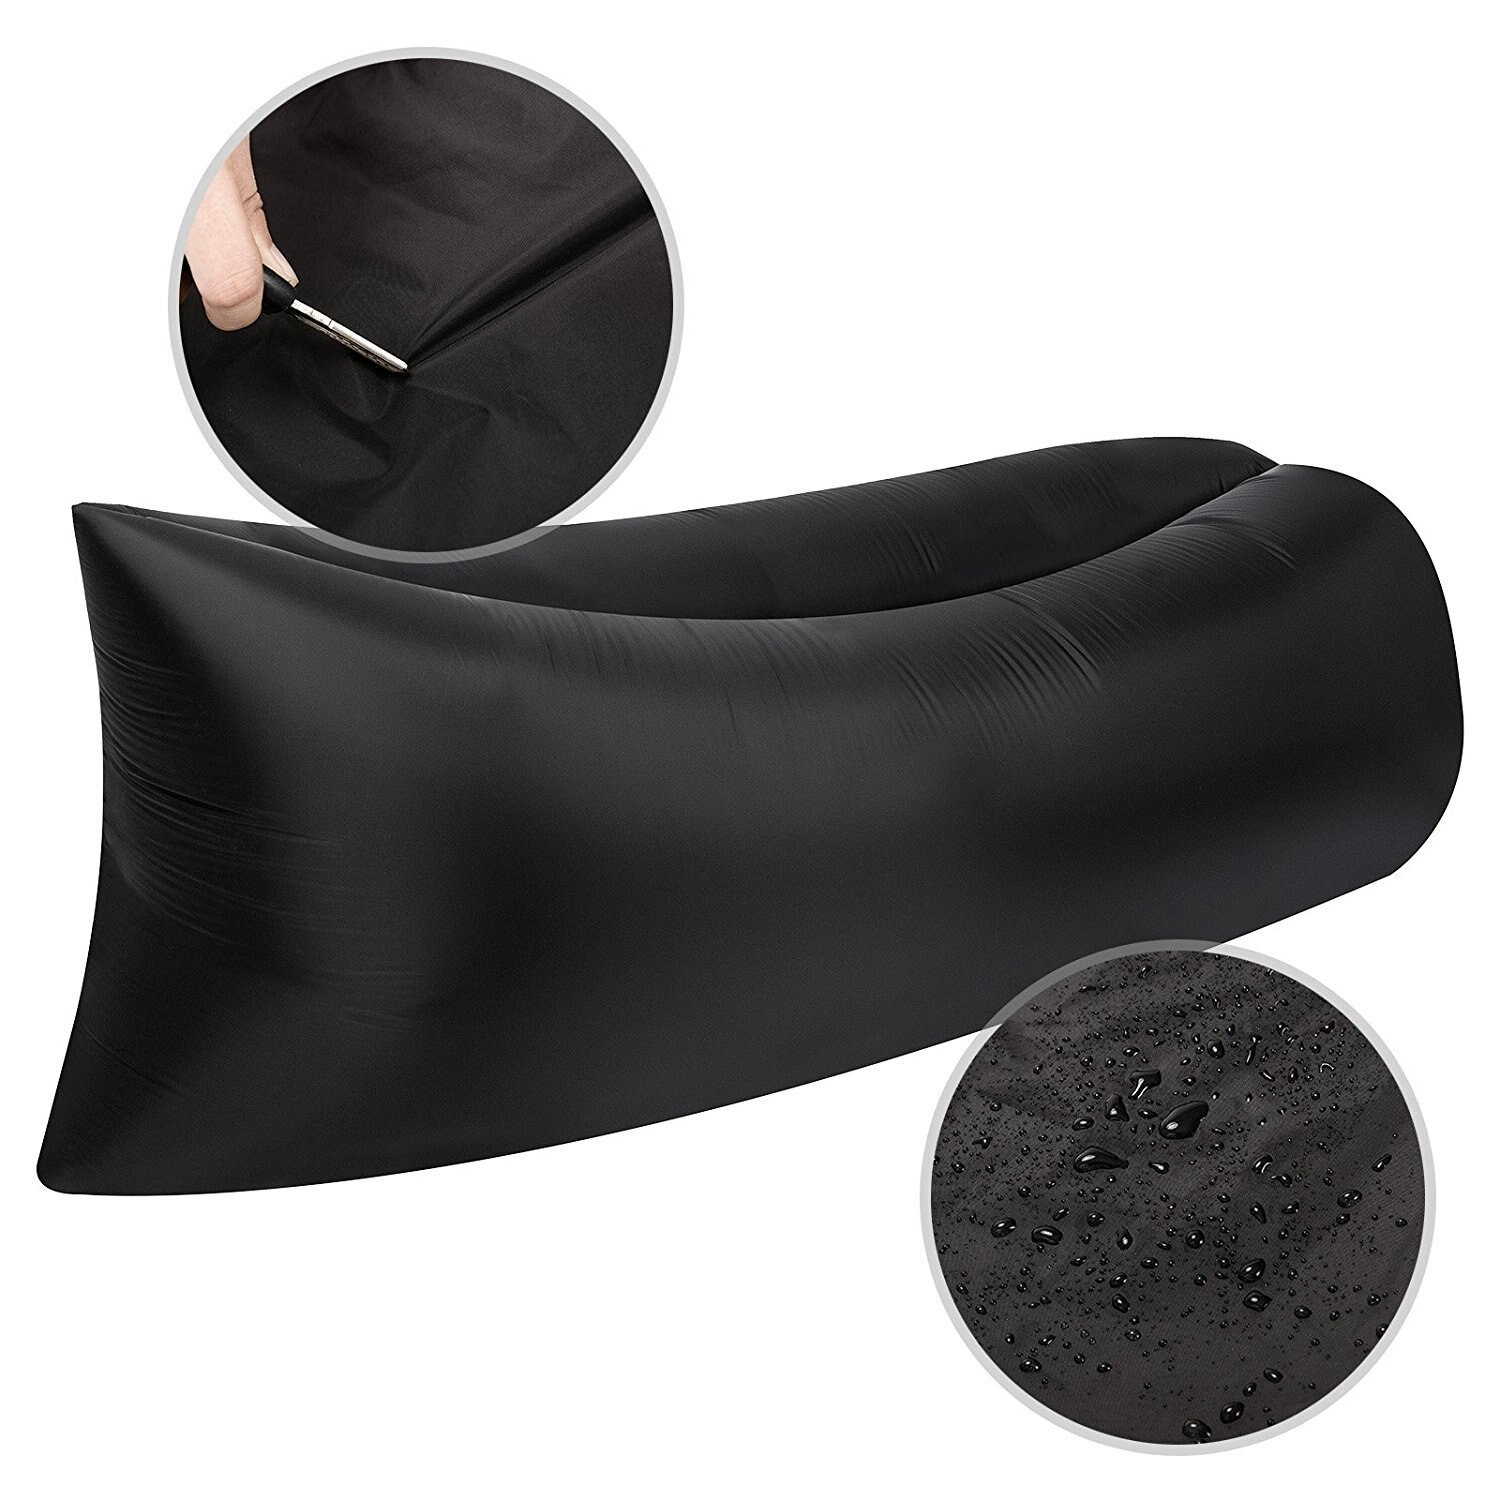 Lit d'air lit gonflable canapé pique-nique Airbag sac de plage paresseux canapé Pad lit gonflable pique-nique pique-nique coussin de couchage: Black